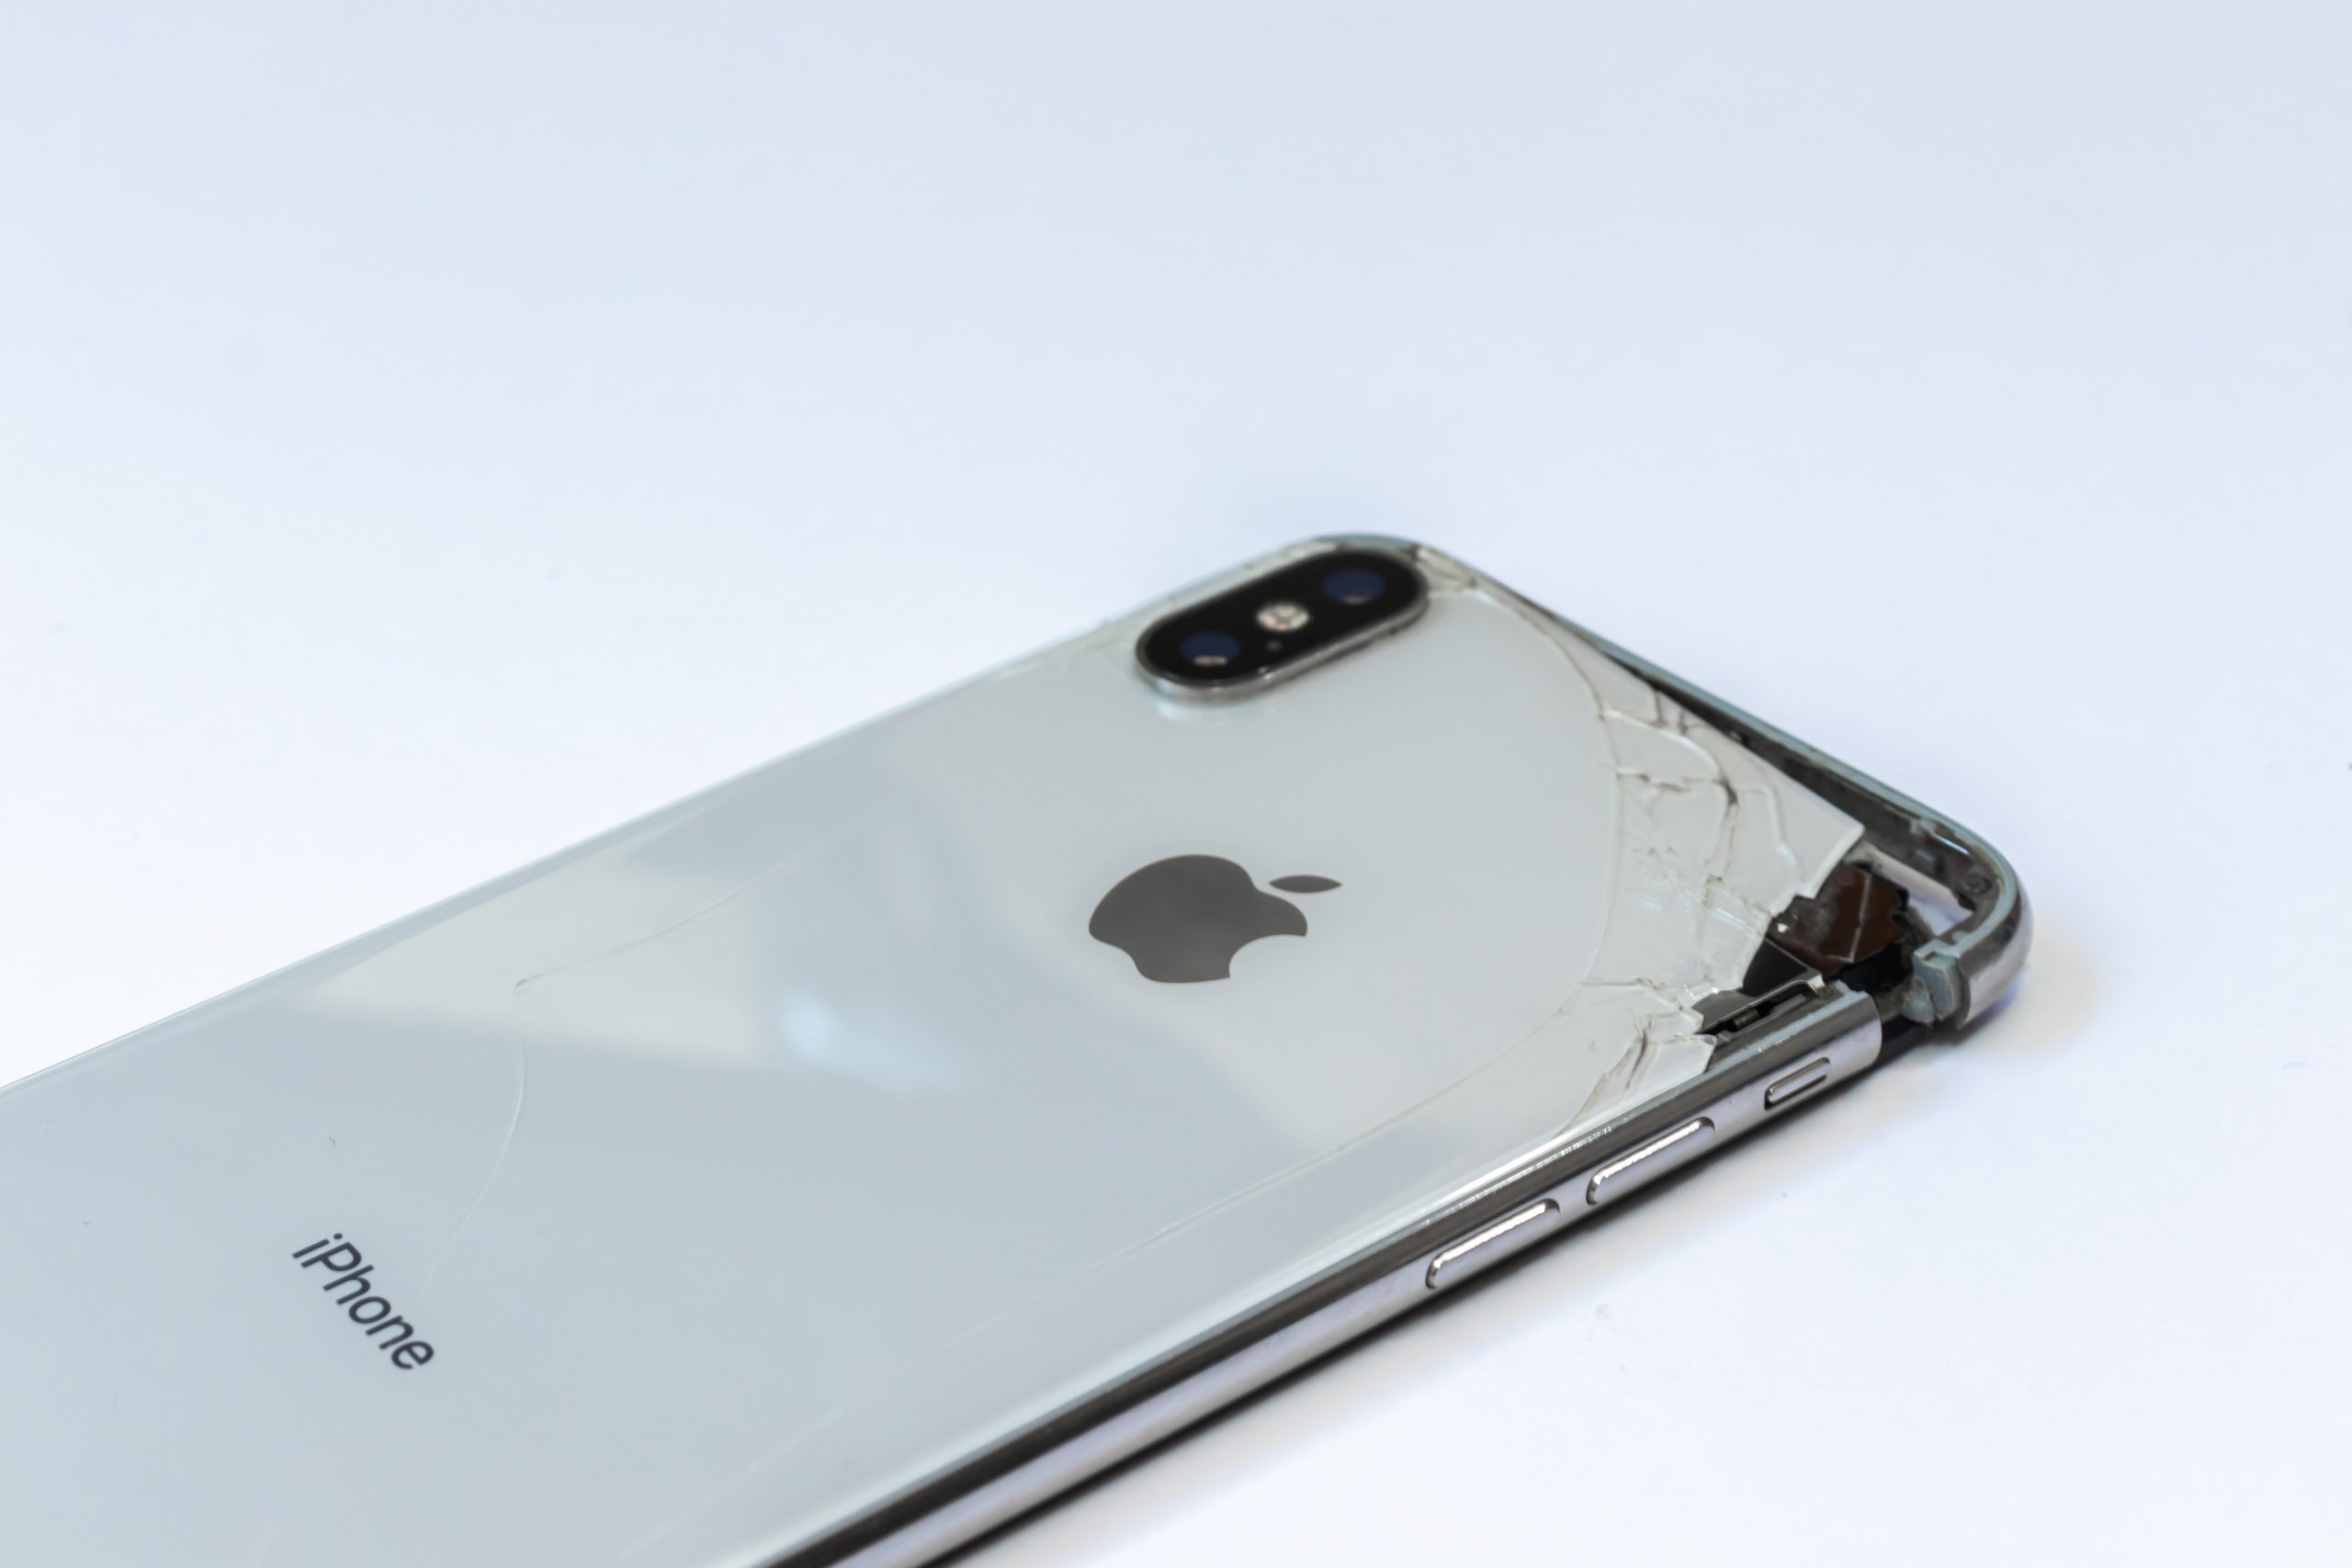 Do iPhone screen repairs work?